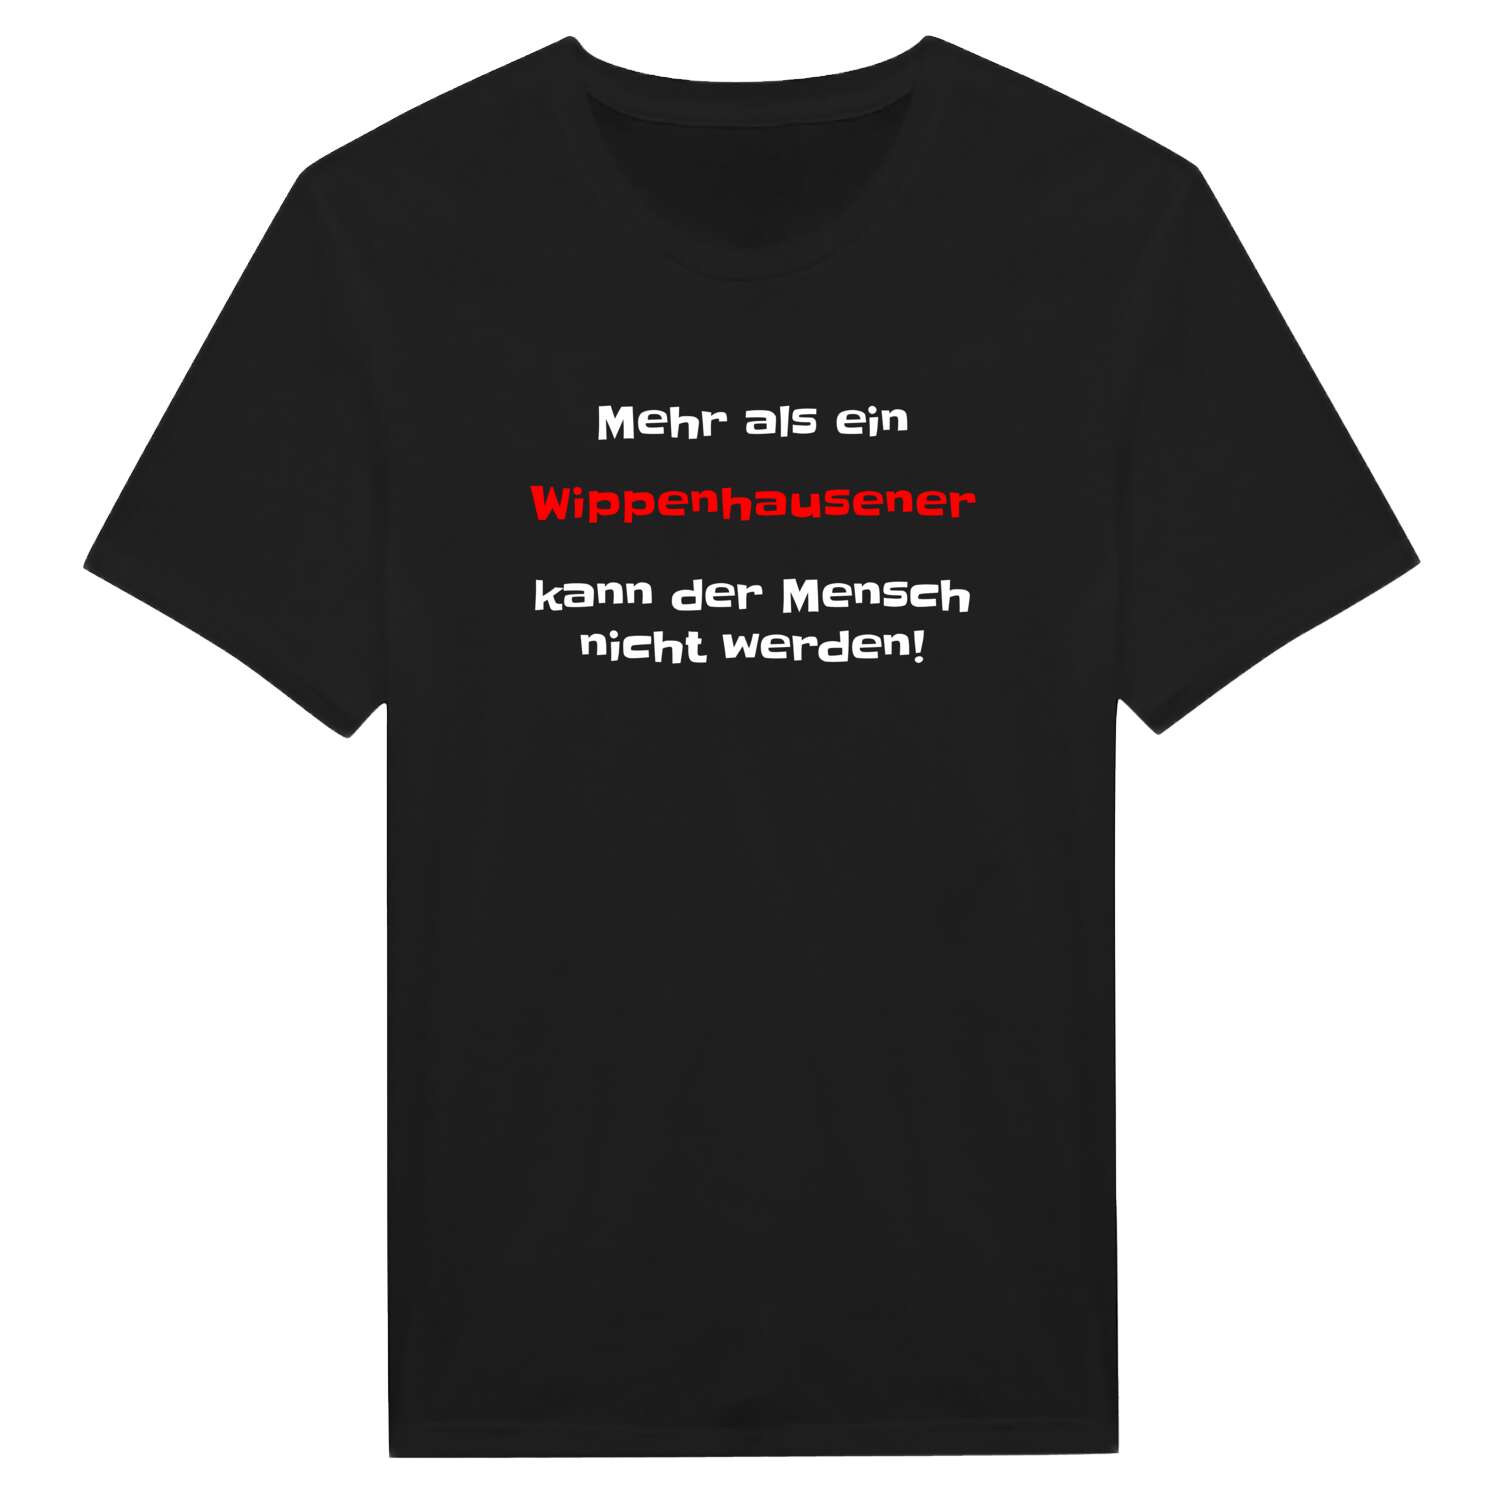 Wippenhausen T-Shirt »Mehr als ein«